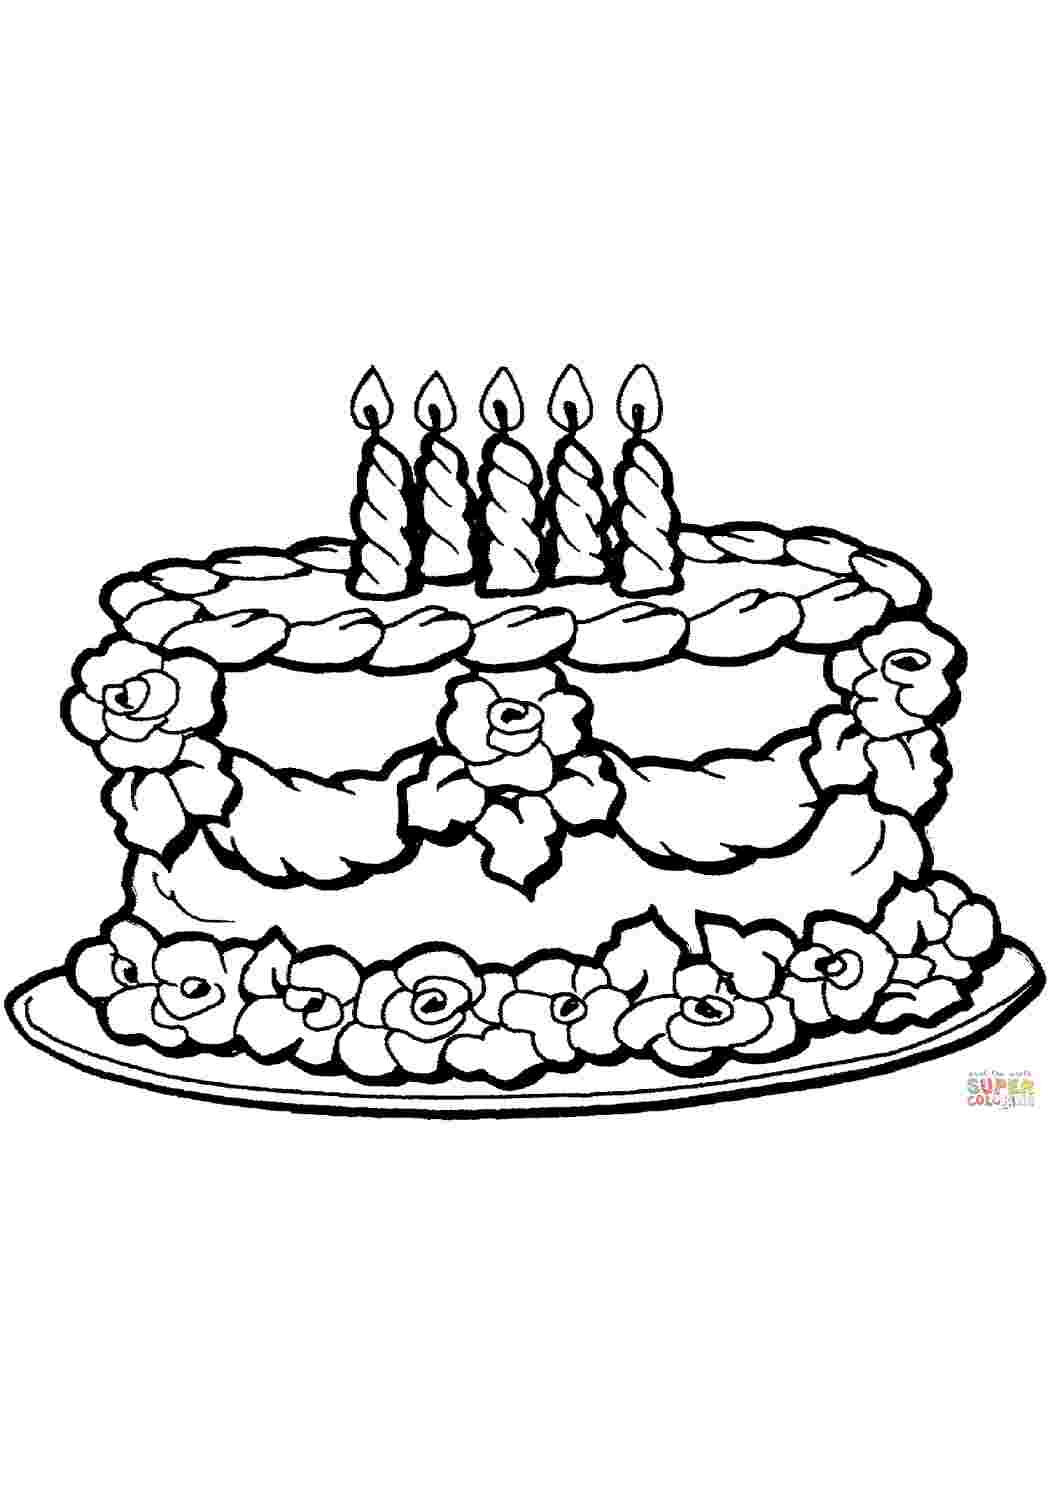 Раскраски Торт, праздник, день рождения, свечки, розочки из крема Раскраски Торты и пирожные  